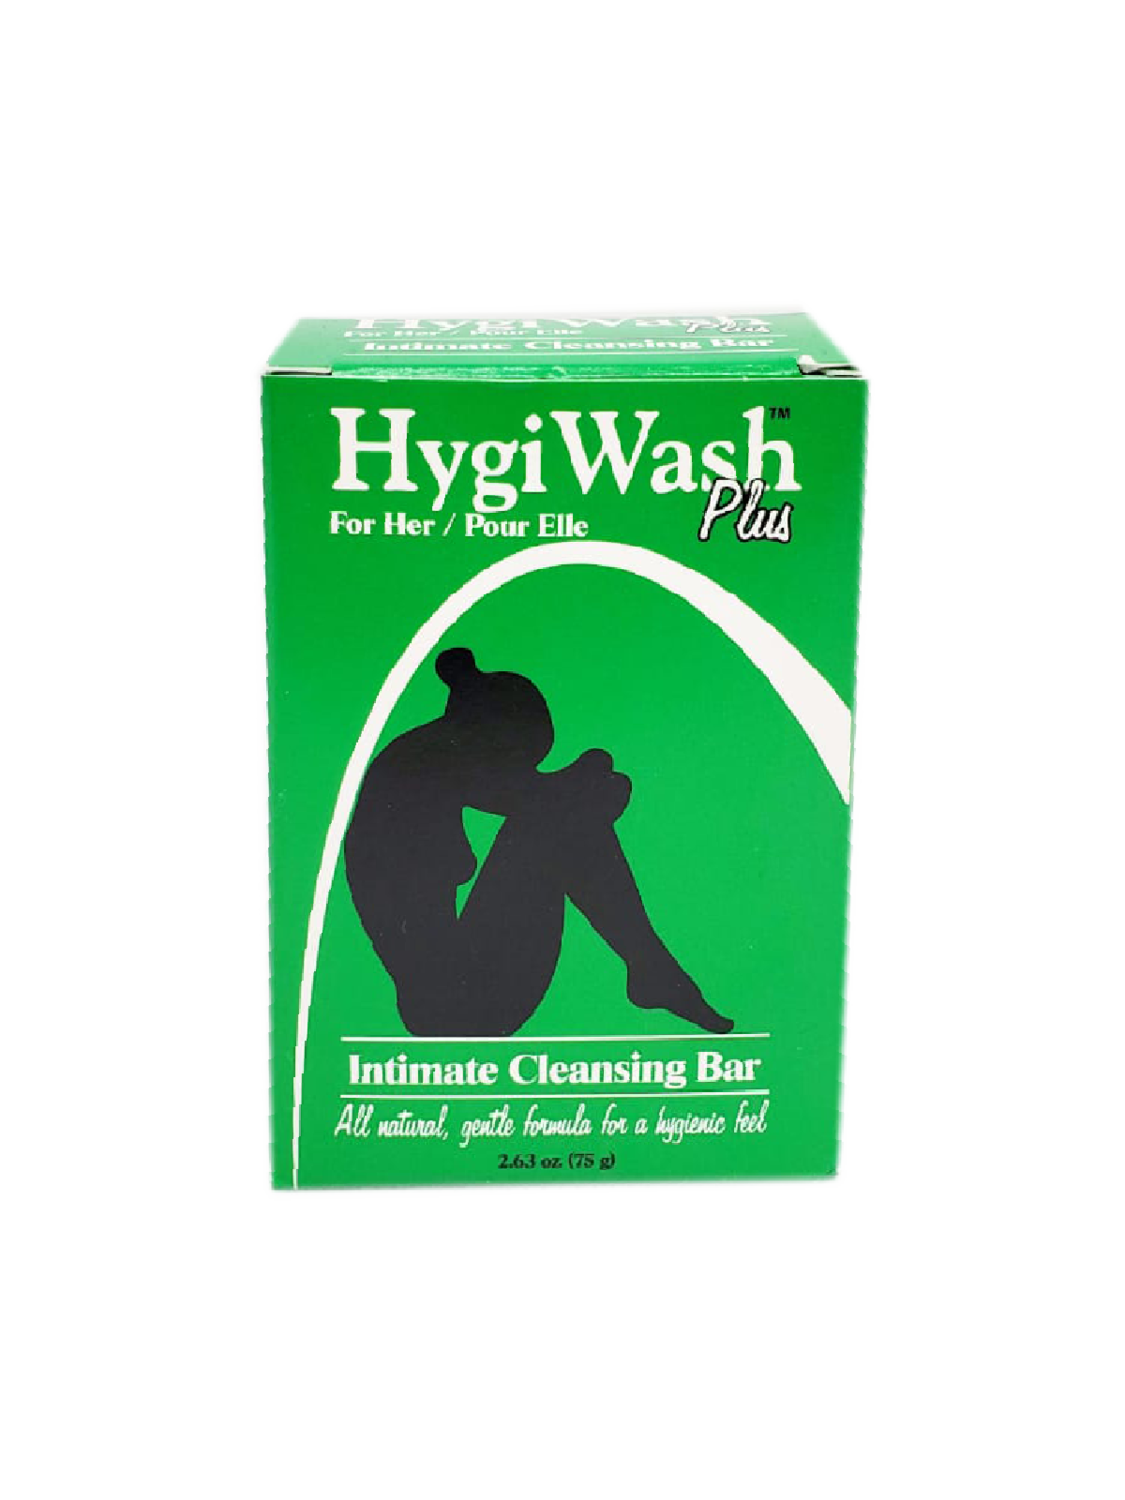 Hygi Wash Plus